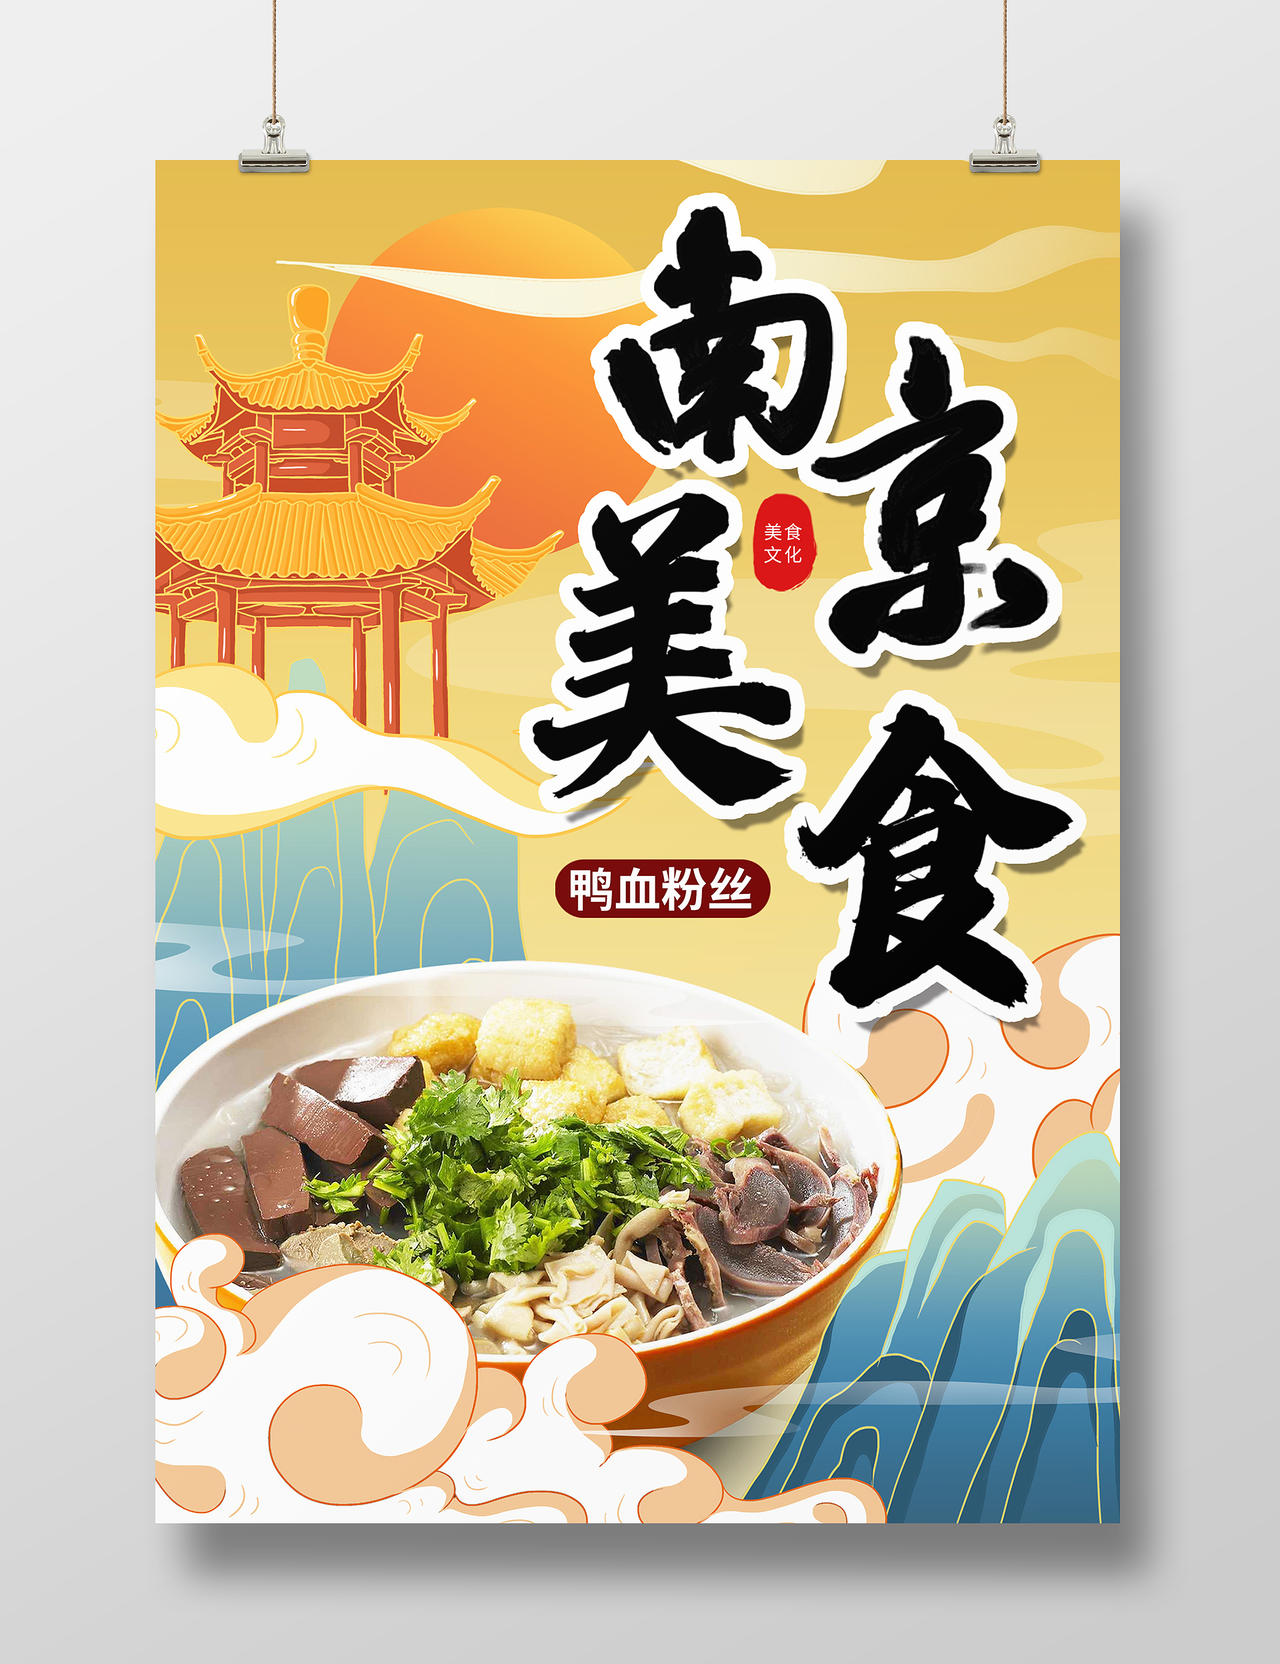 橙色简约时尚大气插画南京旅游美食活动海报